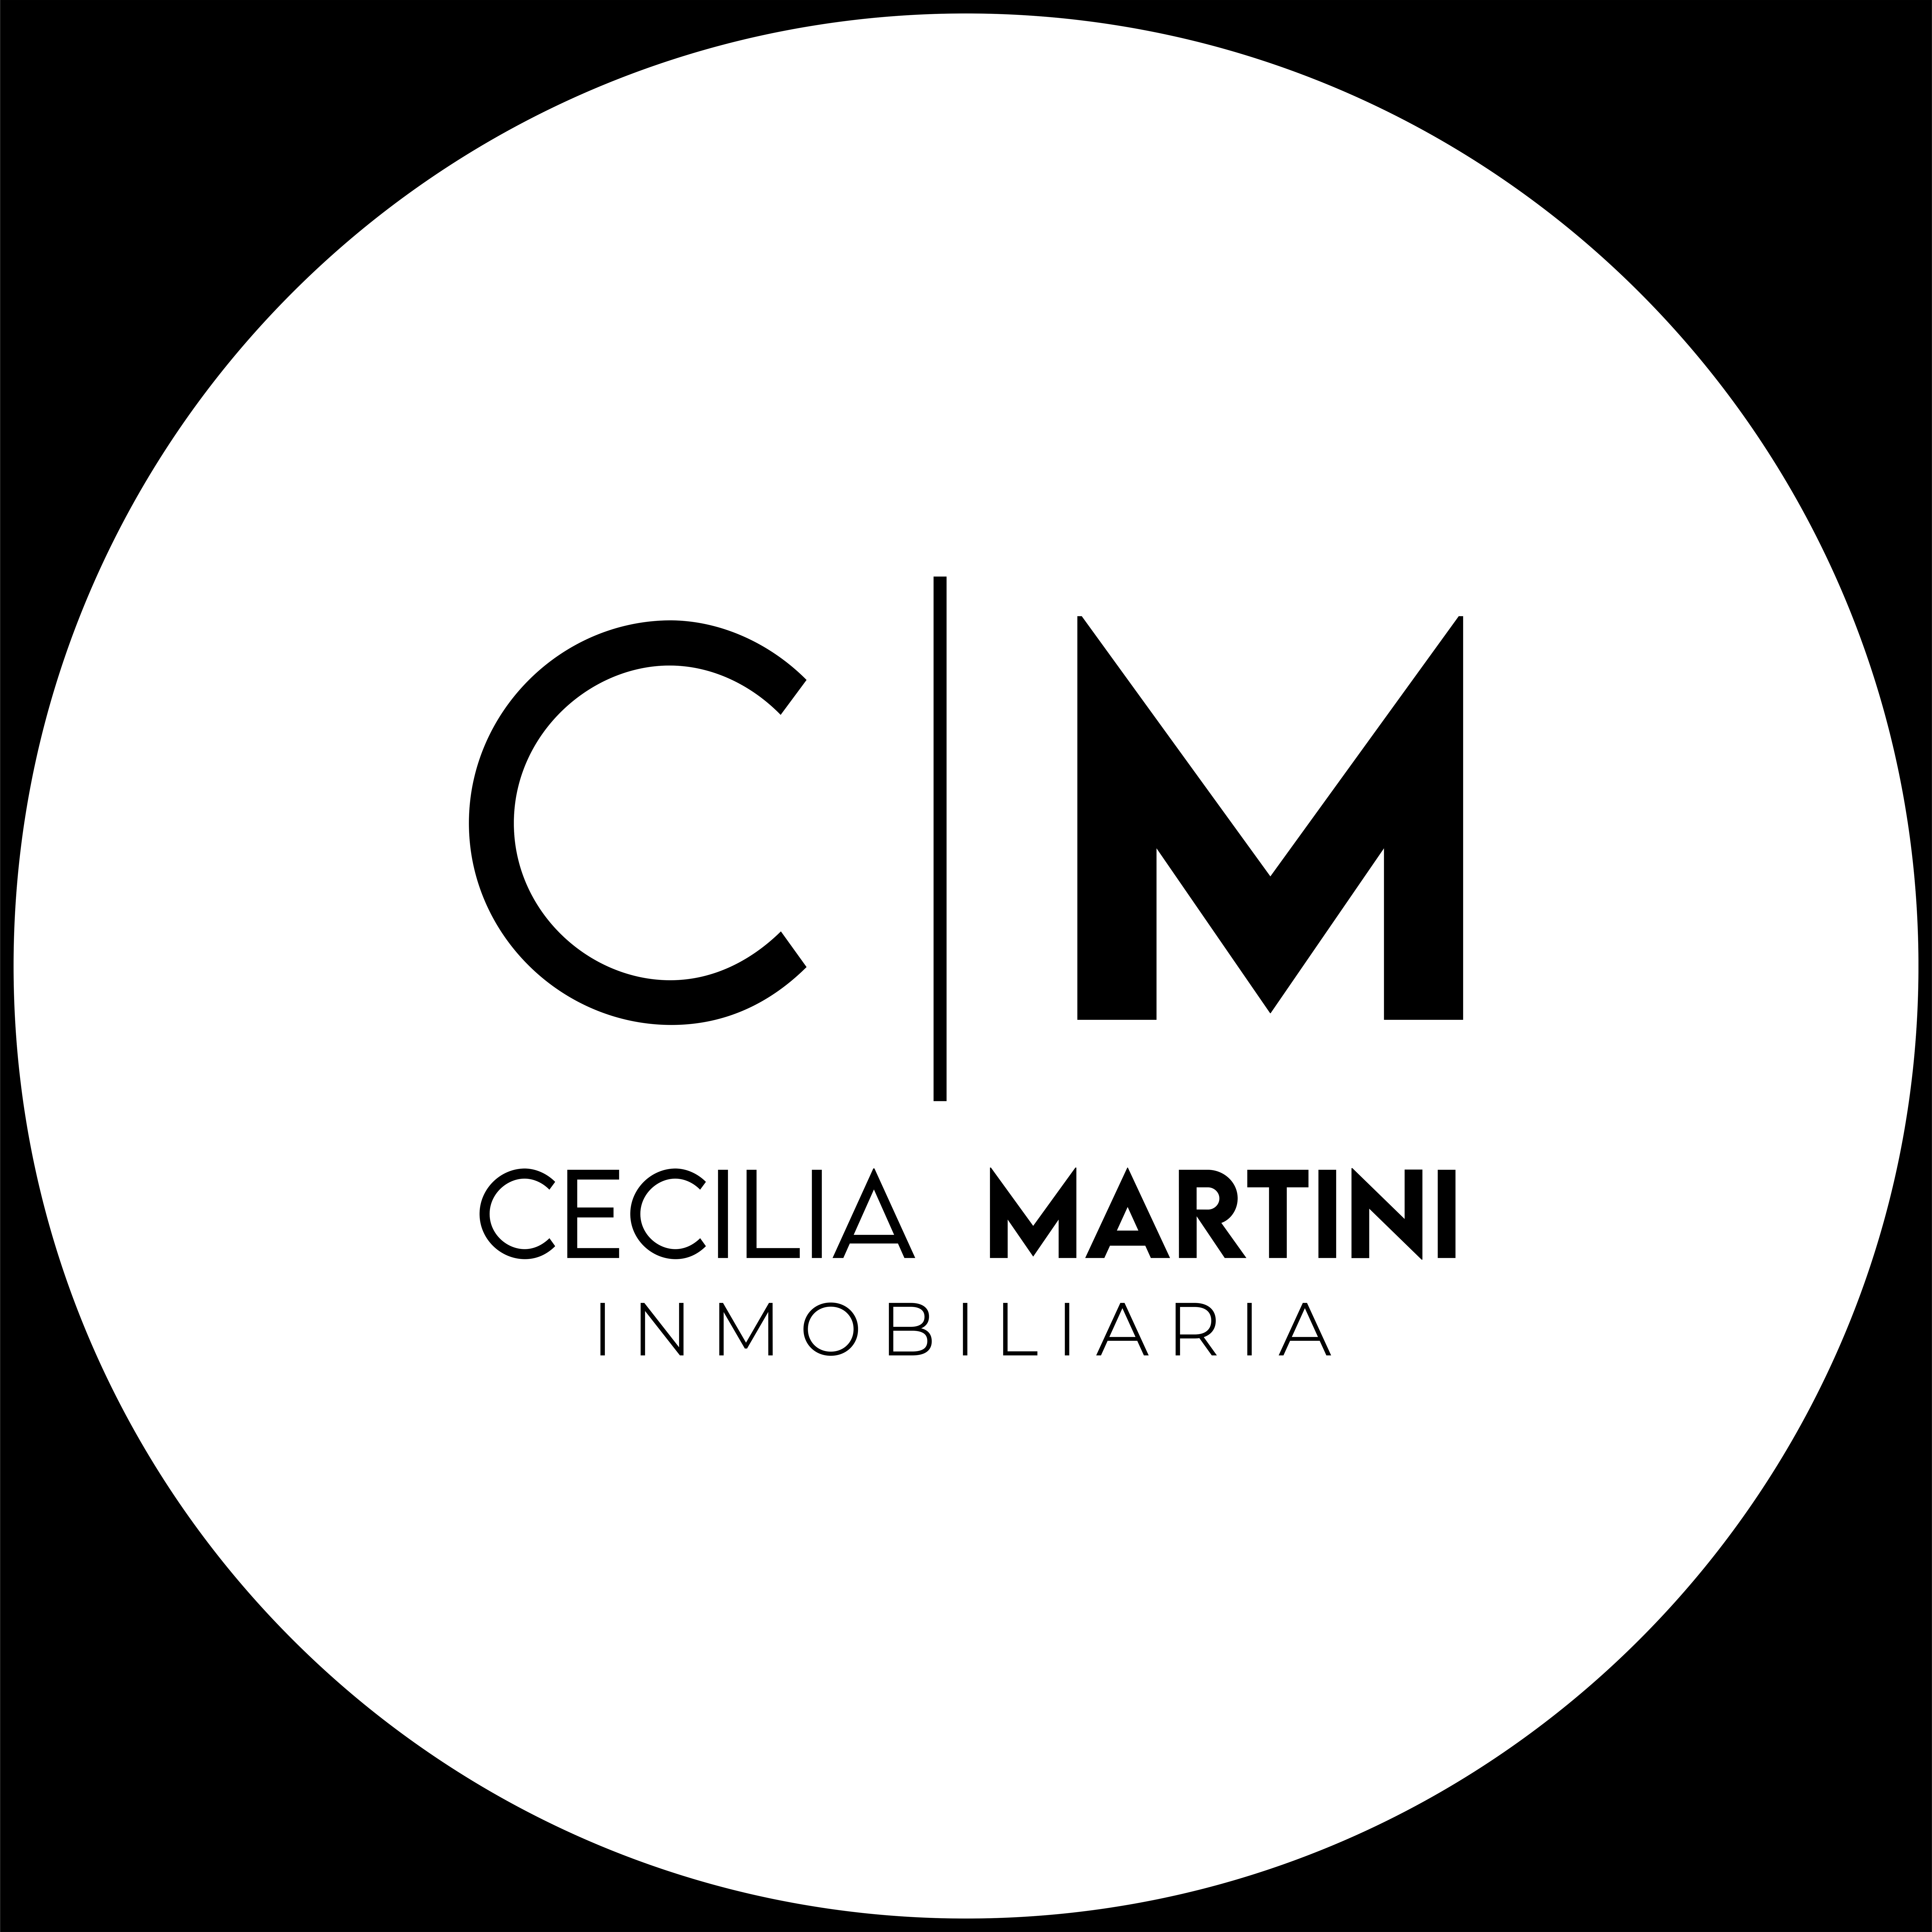 Cecilia Martini